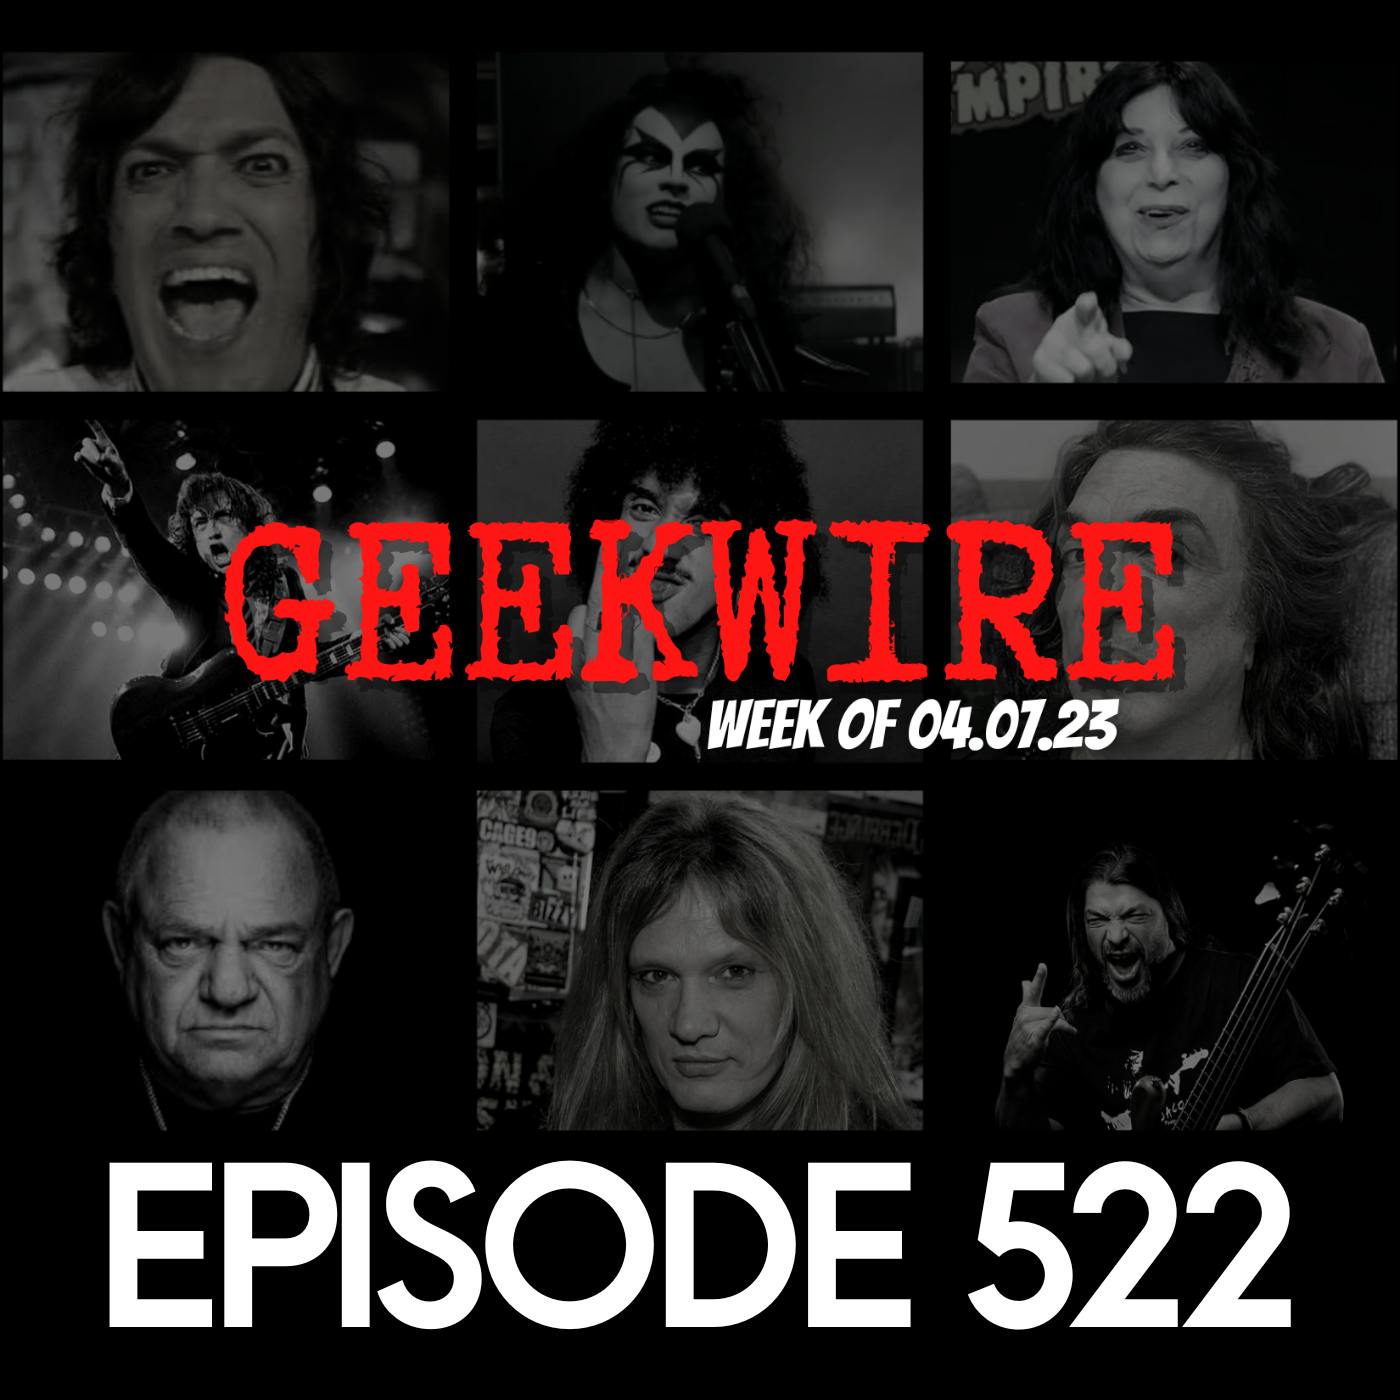 Geekwire for Week of 04.07.23 - Ep522